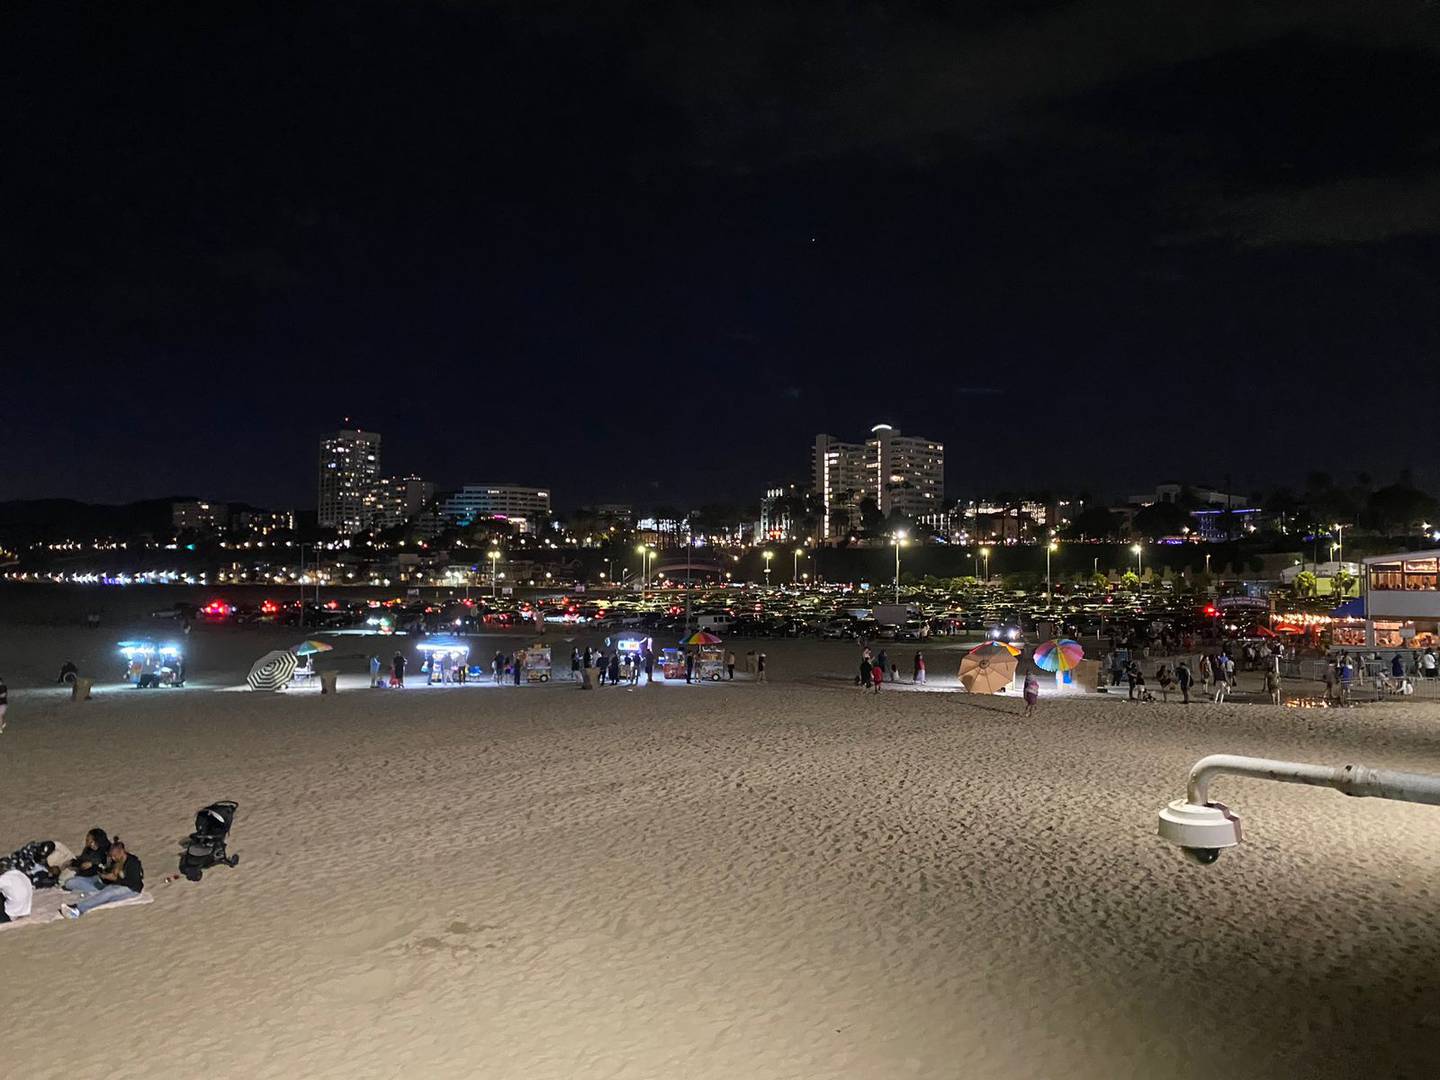 Muelle y playa de Santa Mónica, en Los Ángeles, California, Estados Unidos. Foto: Ricardo Silesky